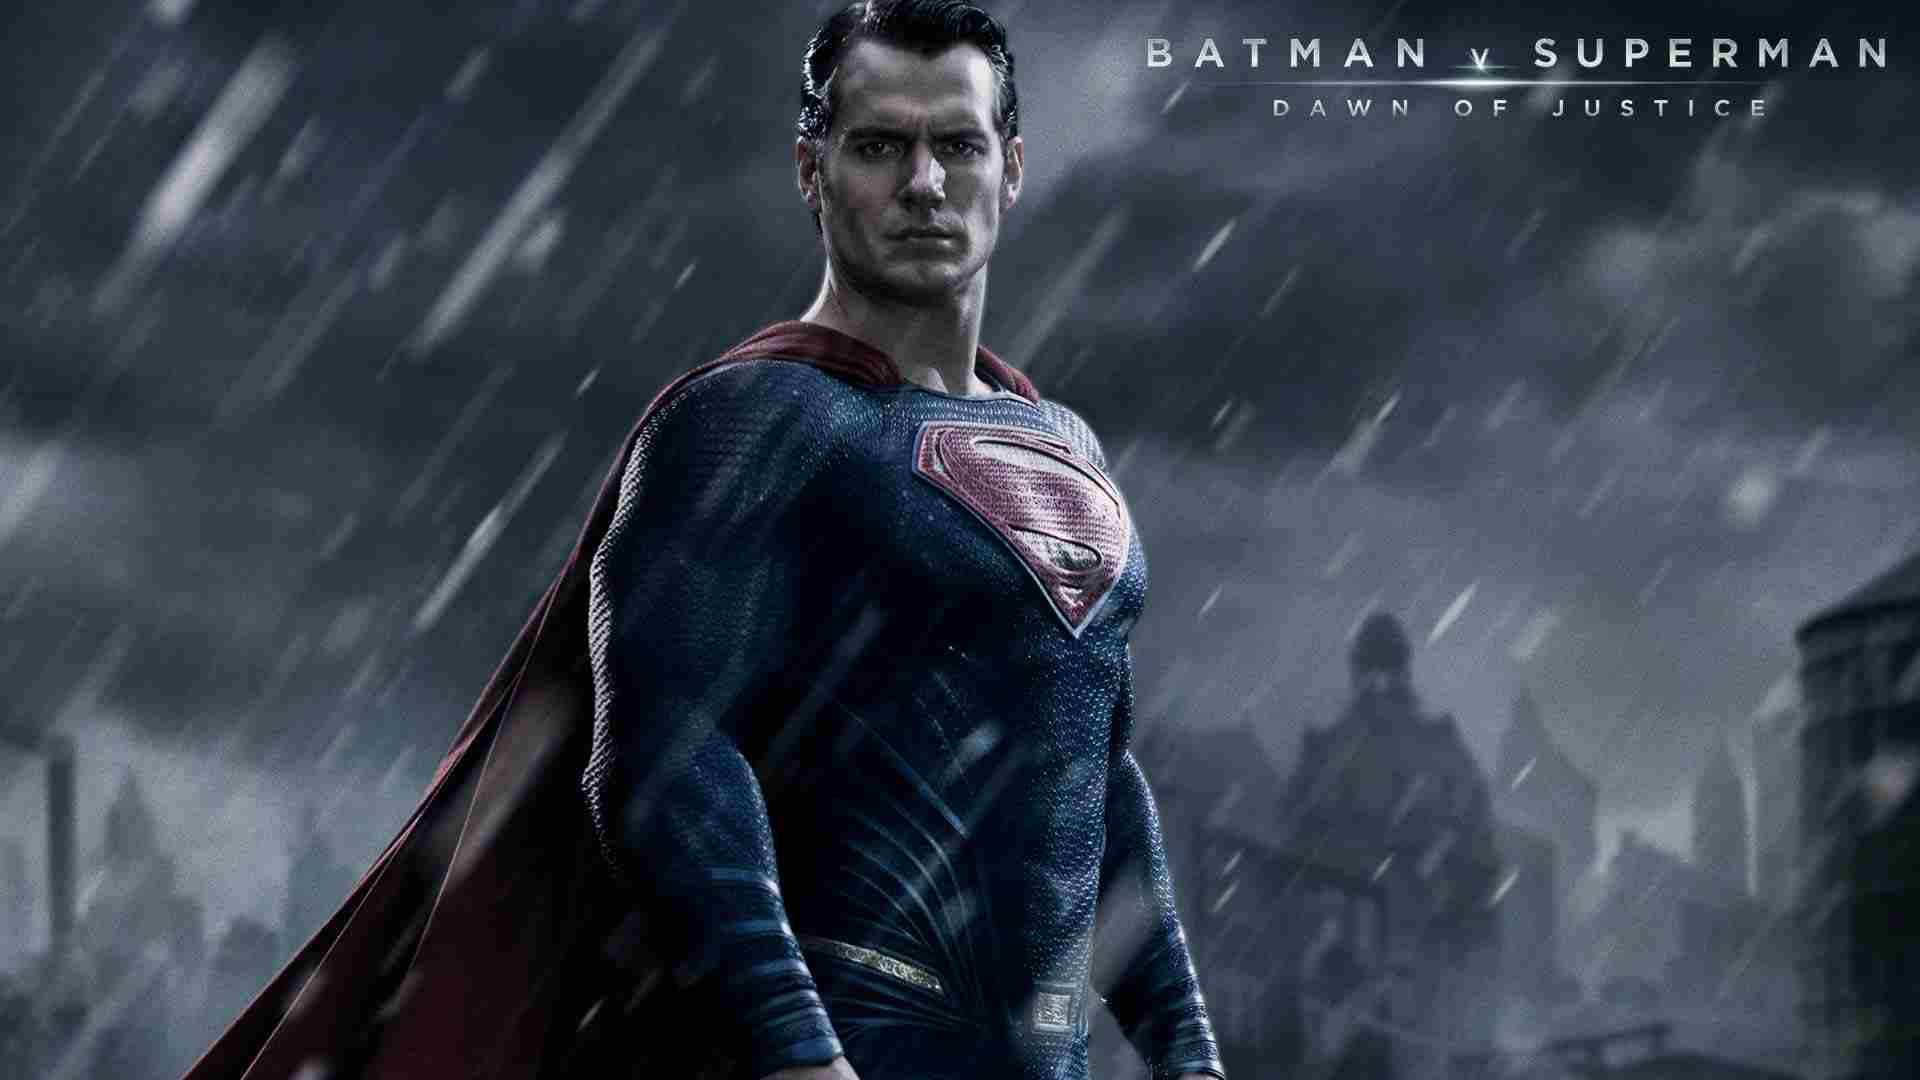 سوبر مان في فيلم Batman v Superman: Dawn of Justice